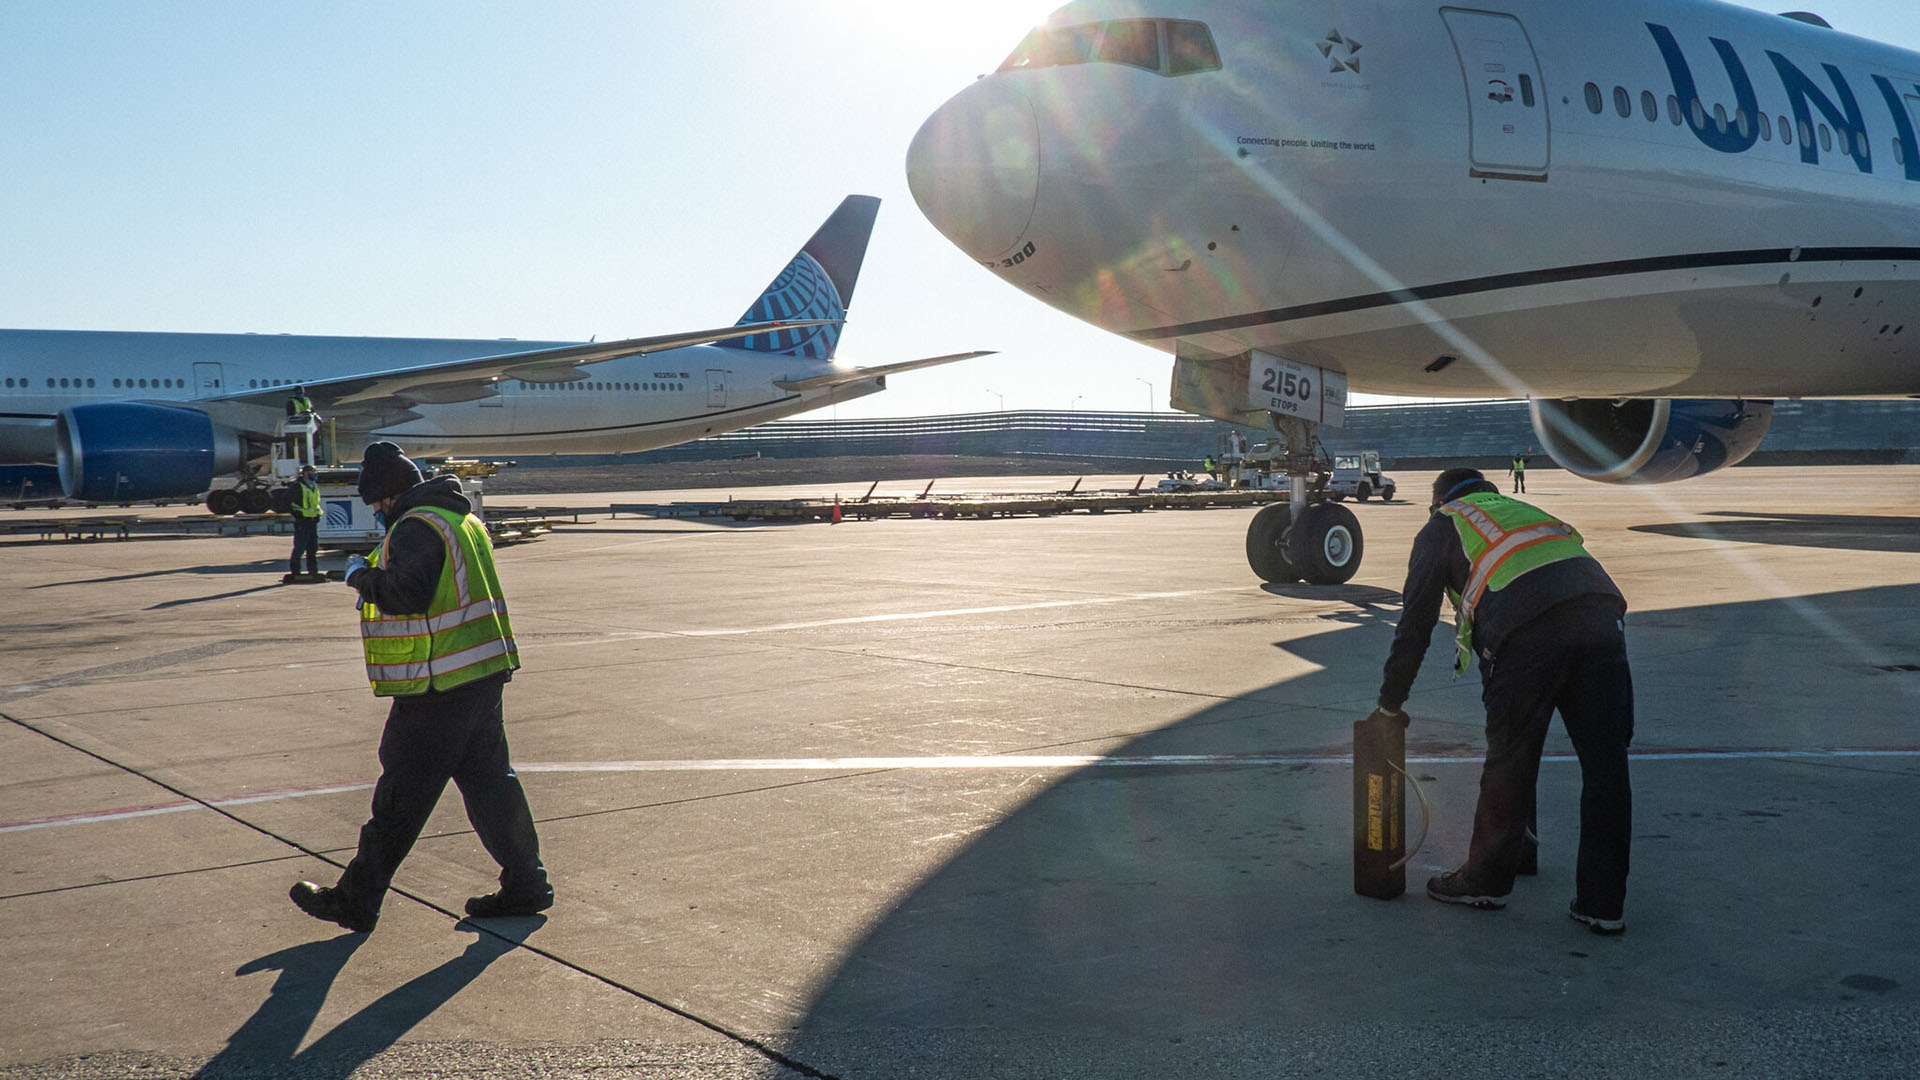 Un acuerdo recientemente anunciado con United Airlines resultará en que la aerolínea compre alrededor de 3.4 millones de galones de combustible sostenible este año.
Credit ... Sebastián Hidalgo para The New York Times